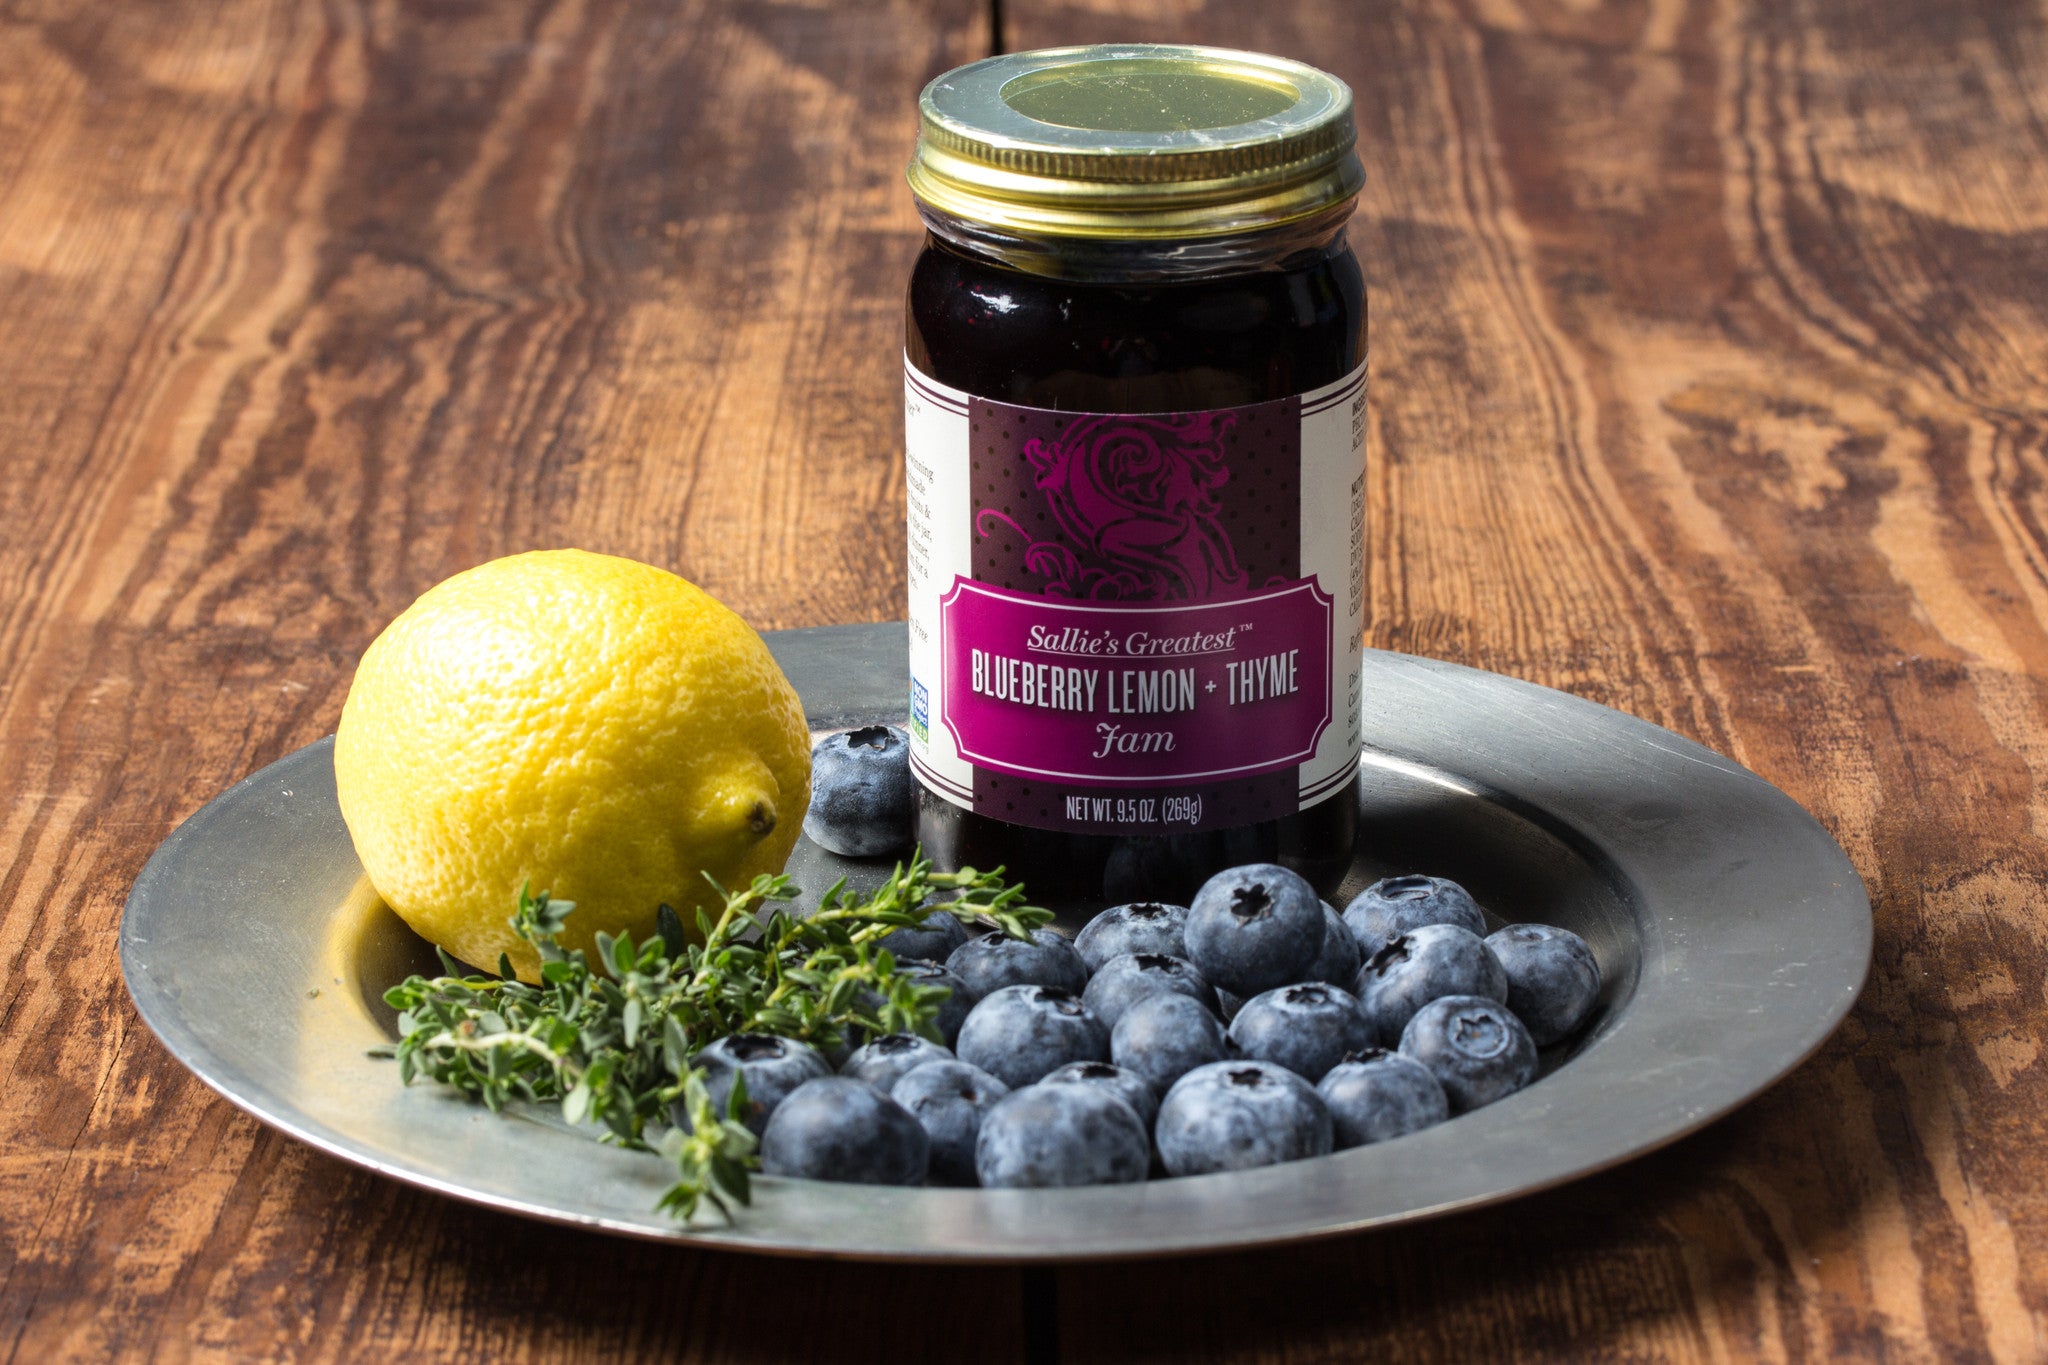 Blueberry Lemon + Thyme Jam